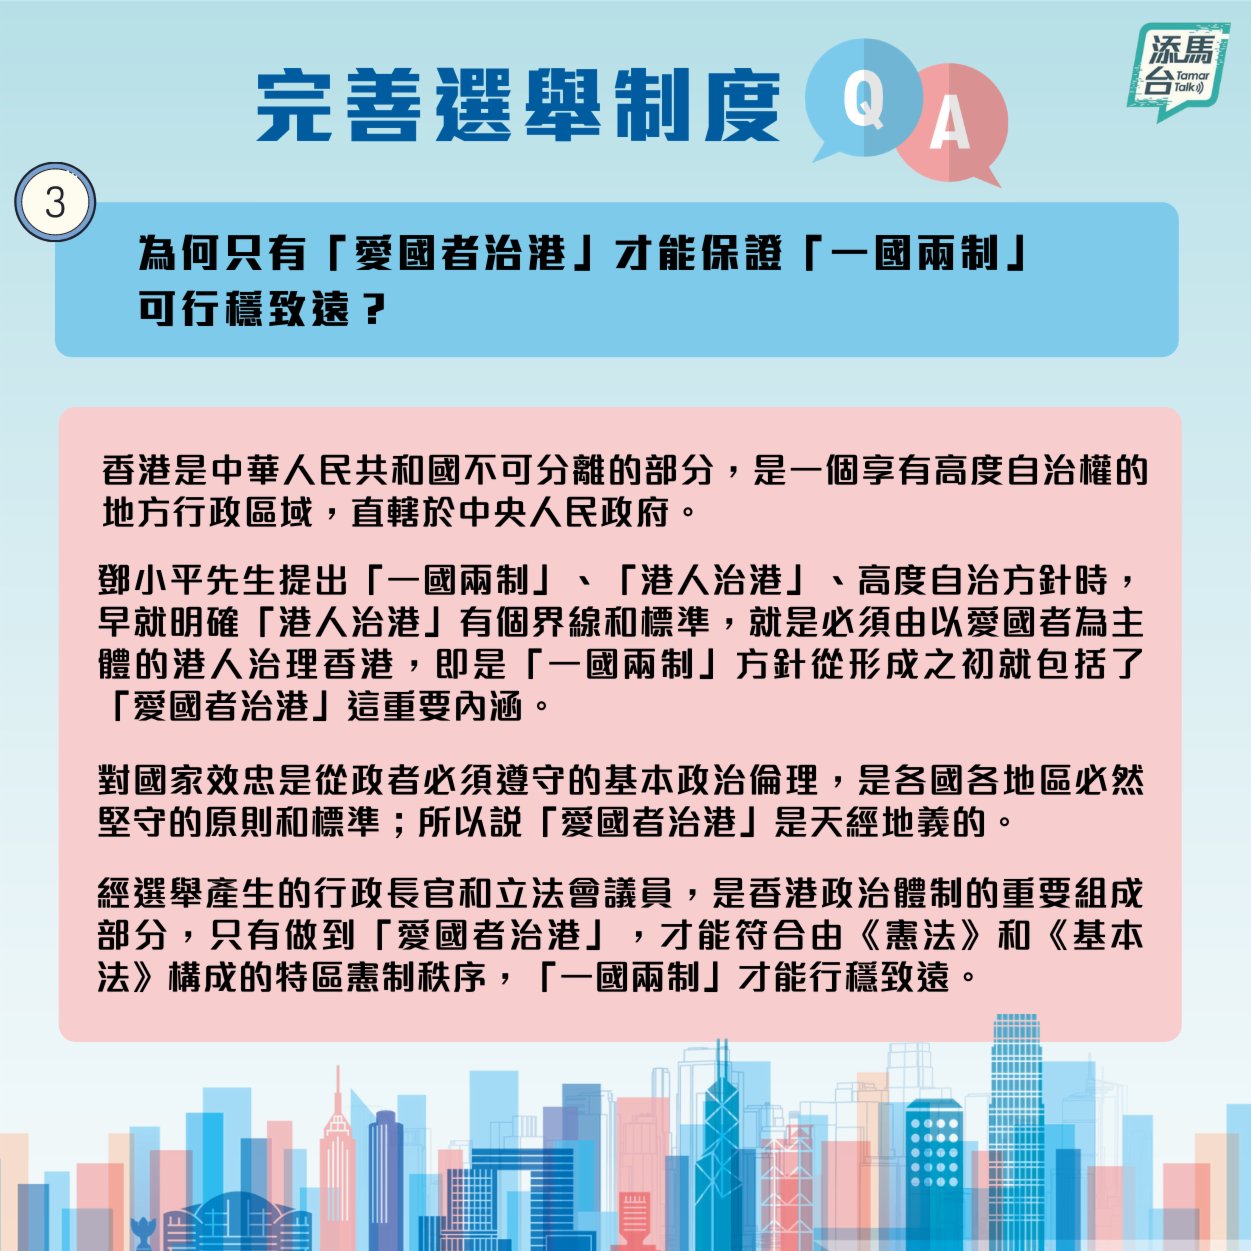 特區政府近日在社交媒體上發文，系統回答了新修訂的基本法附件一和附件二怎樣令香港由亂到治，確保愛國者治港，「一國兩制」行穩至遠，香港繼續安定繁榮等一系列問題。